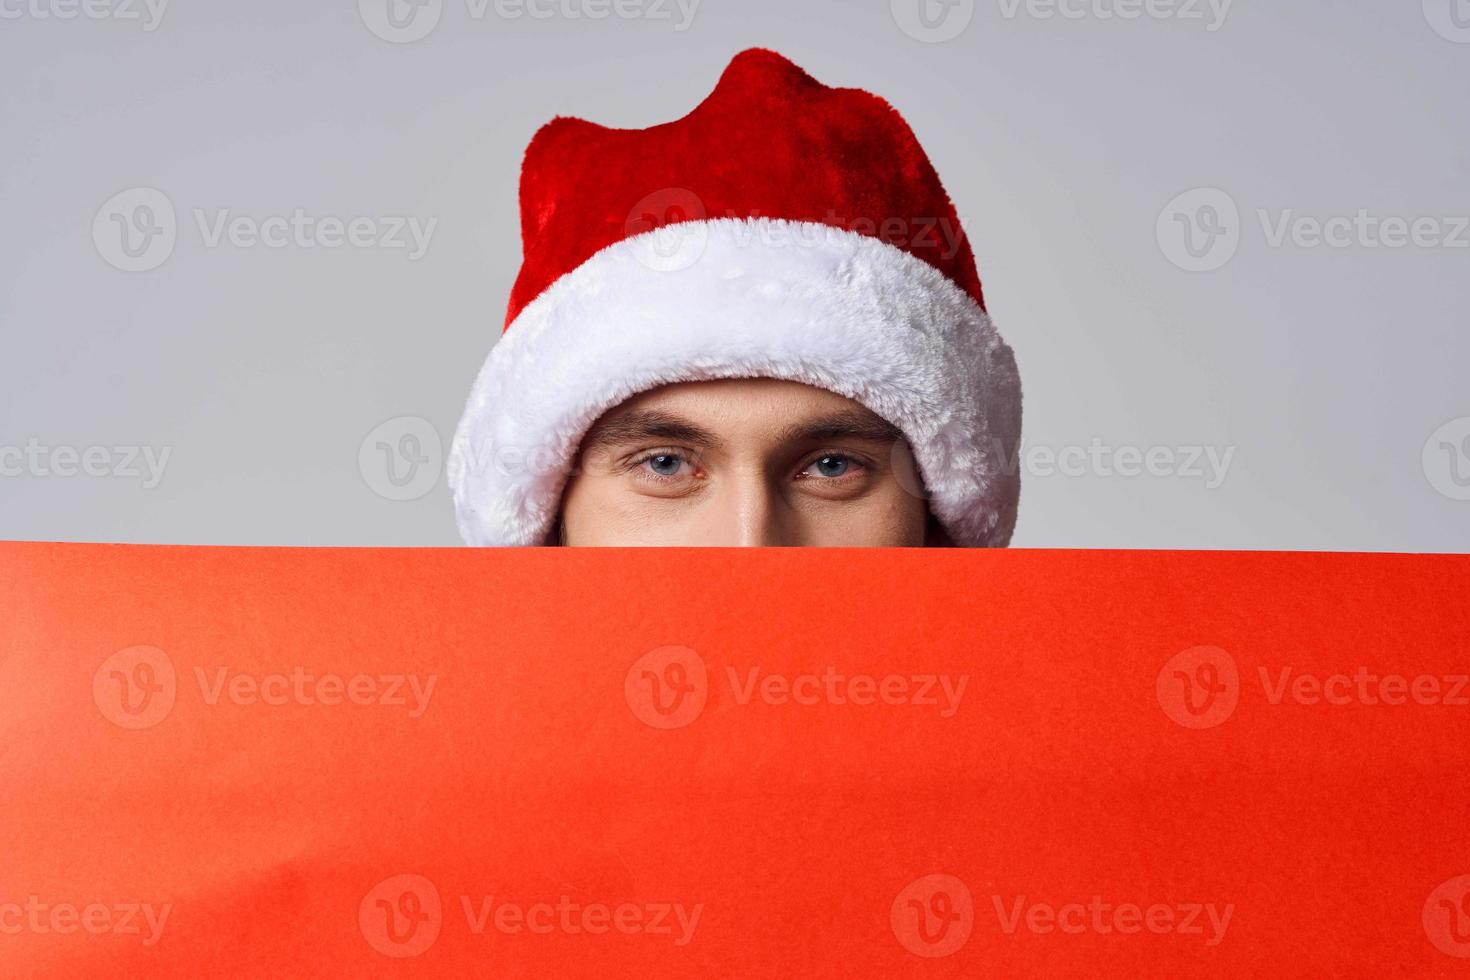 emotivo uomo rosso carta tabellone pubblicità Natale copia-spazio studio foto